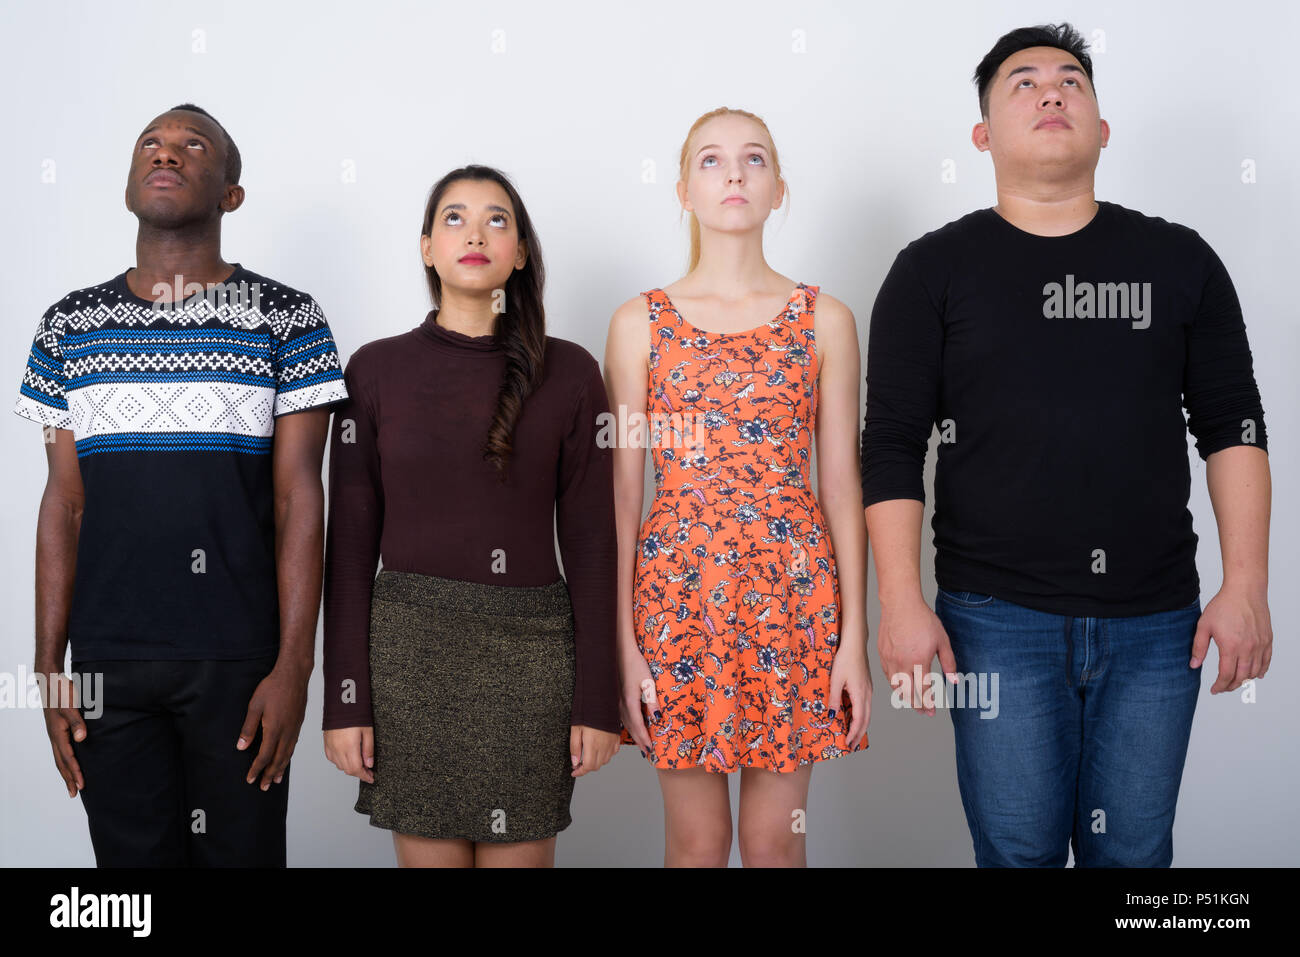 Foto de estudio de diversos grupos de amigos multiétnico mirando hacia arriba Foto de stock